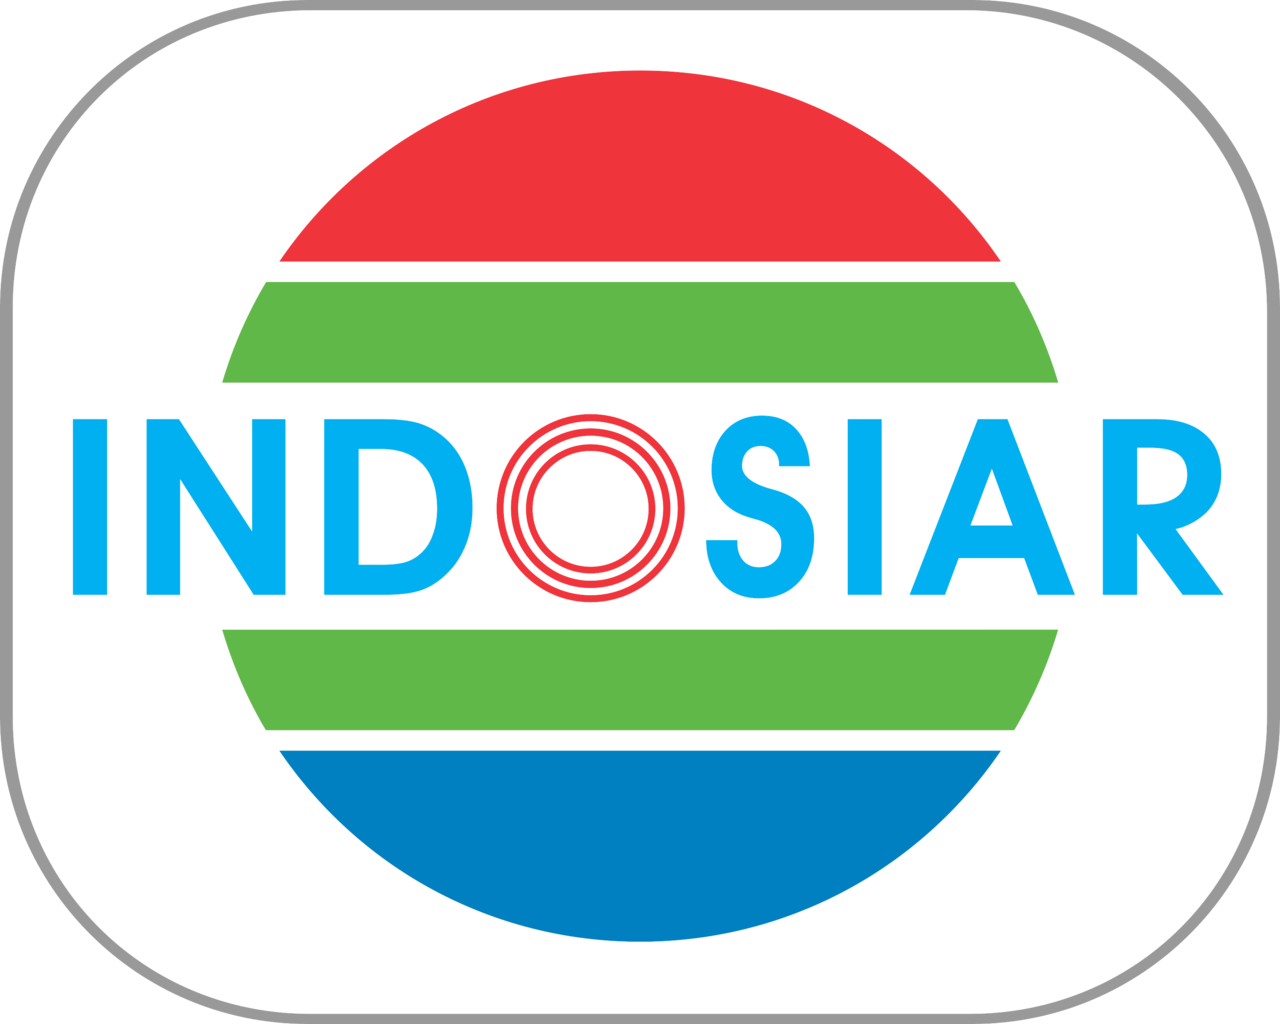 Jadwal Acara Tv Indosiar Dan Link Live Streaming Hari Ini Kamis 10 Desember 2020 Portal Surabaya